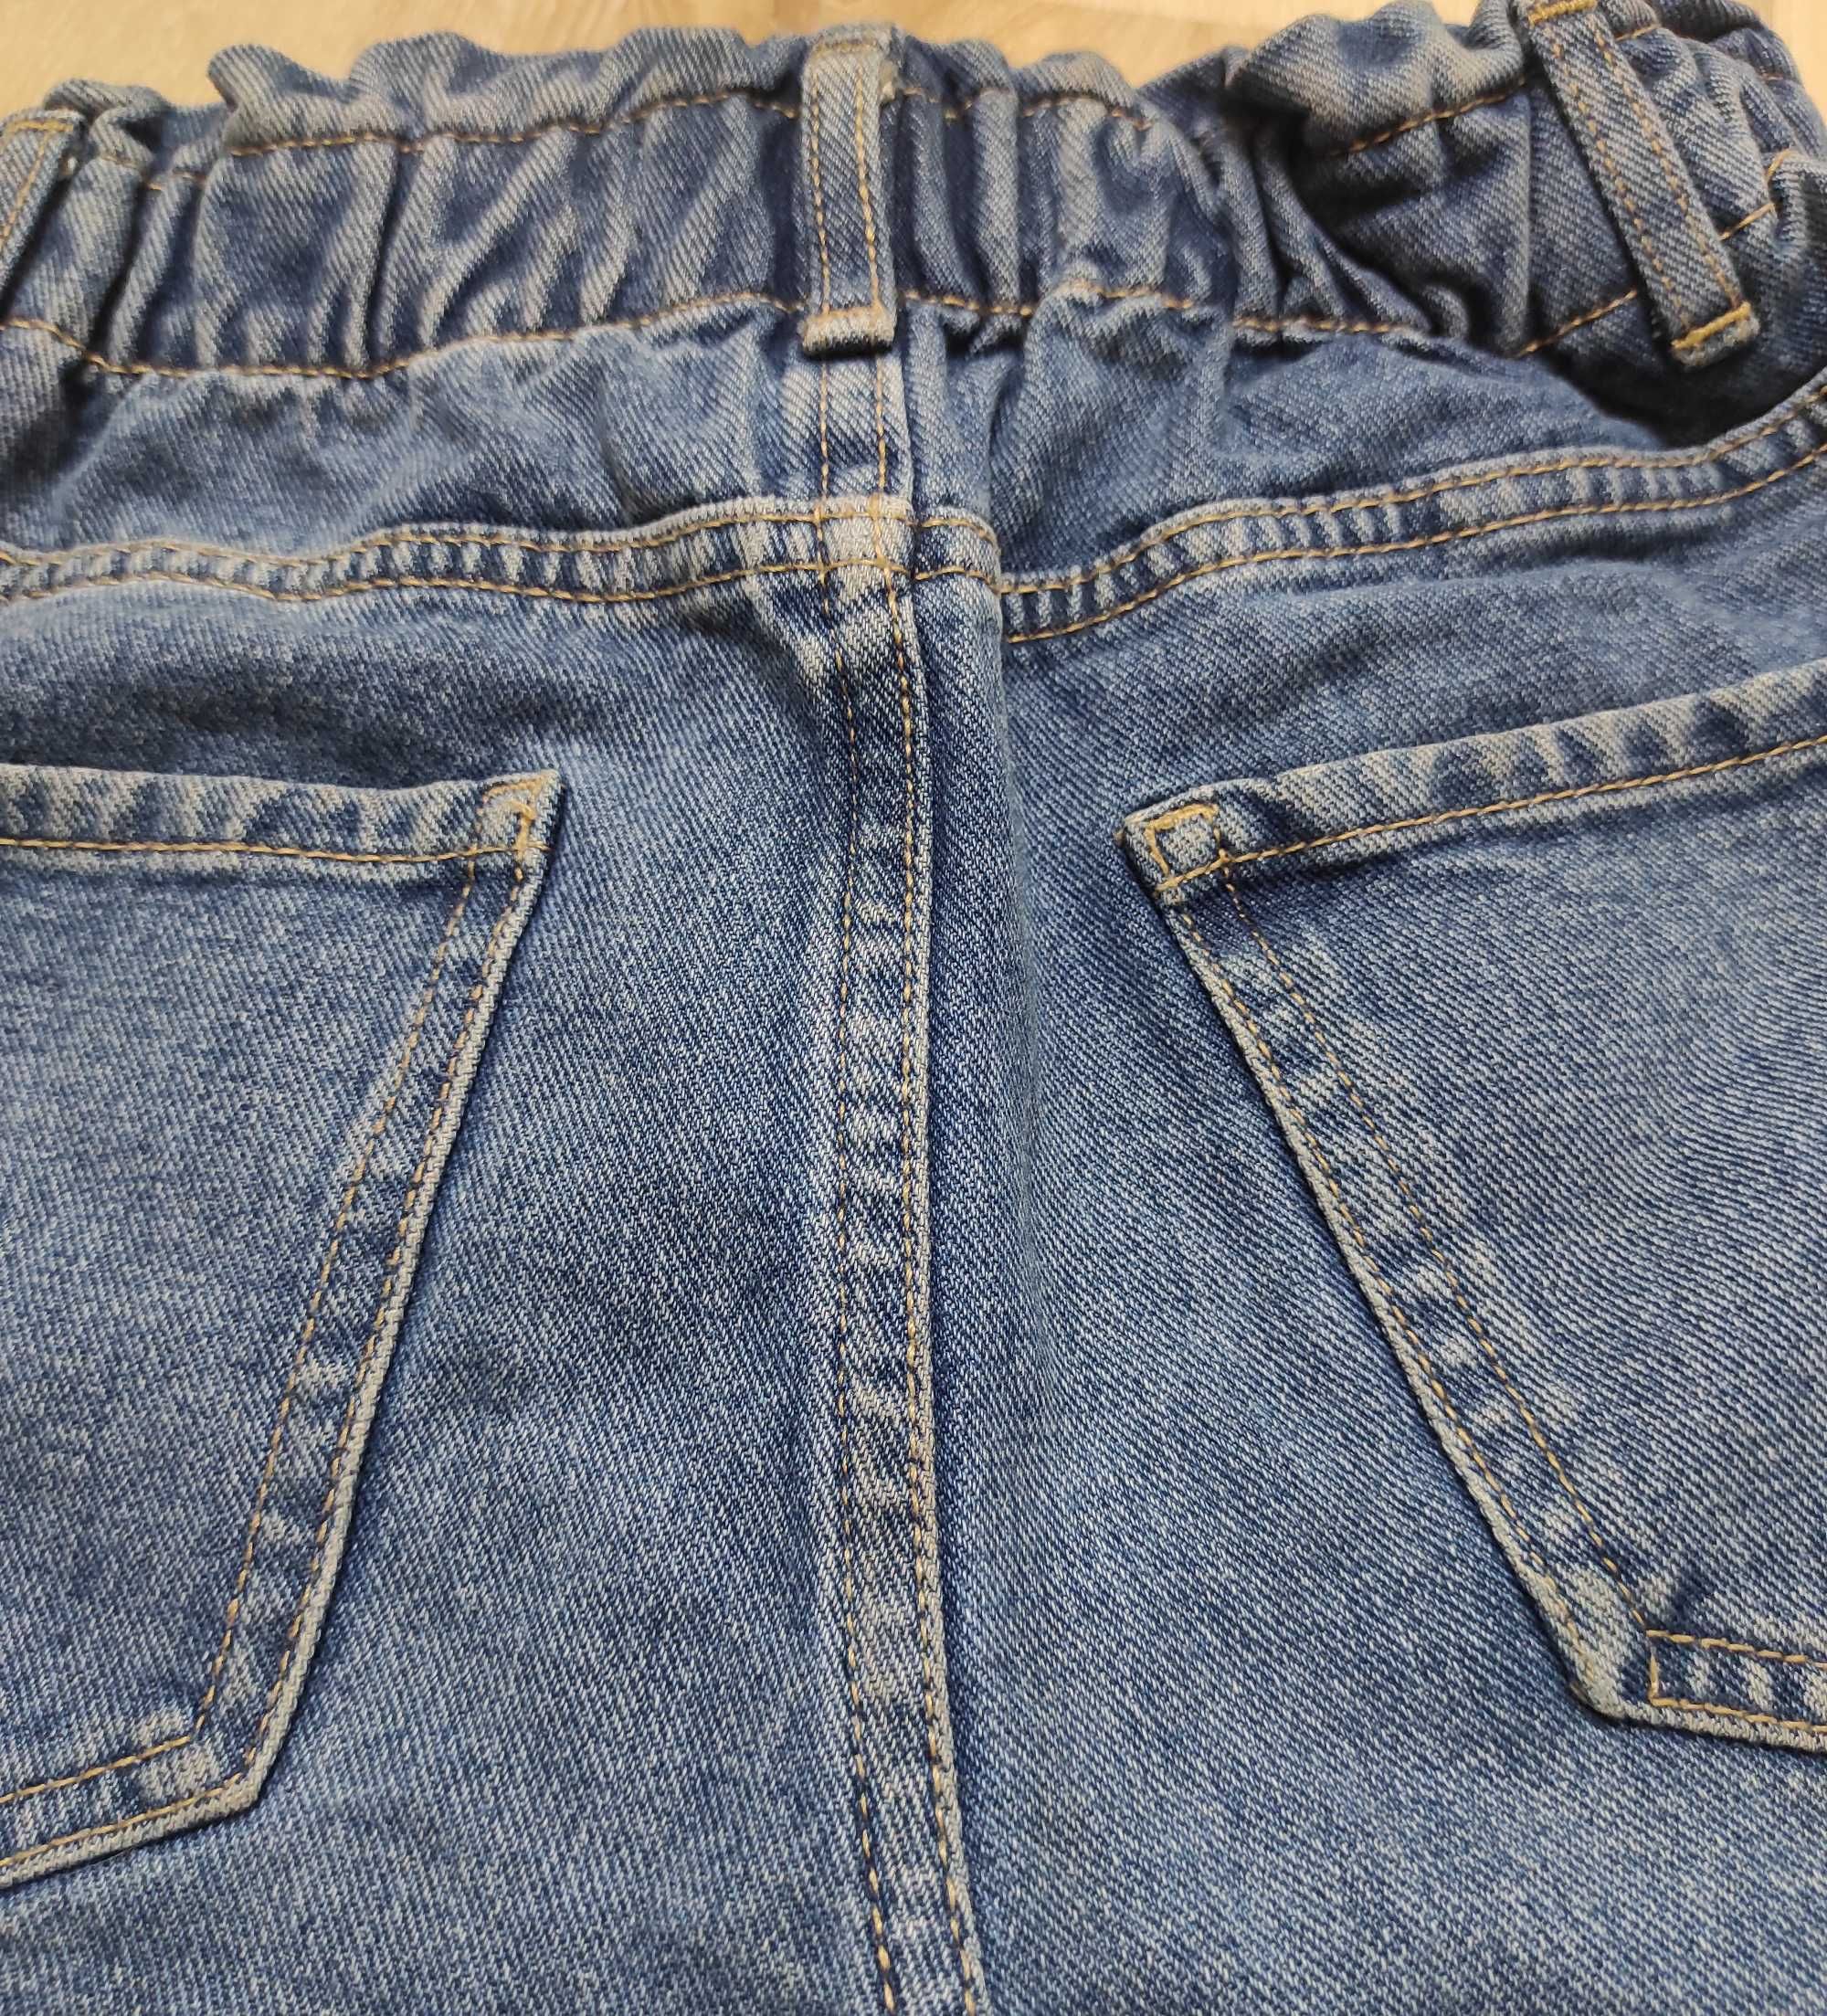 Широкие джинсовые шорты Мом на резинке, с высокой посадкой на 8-9 лет